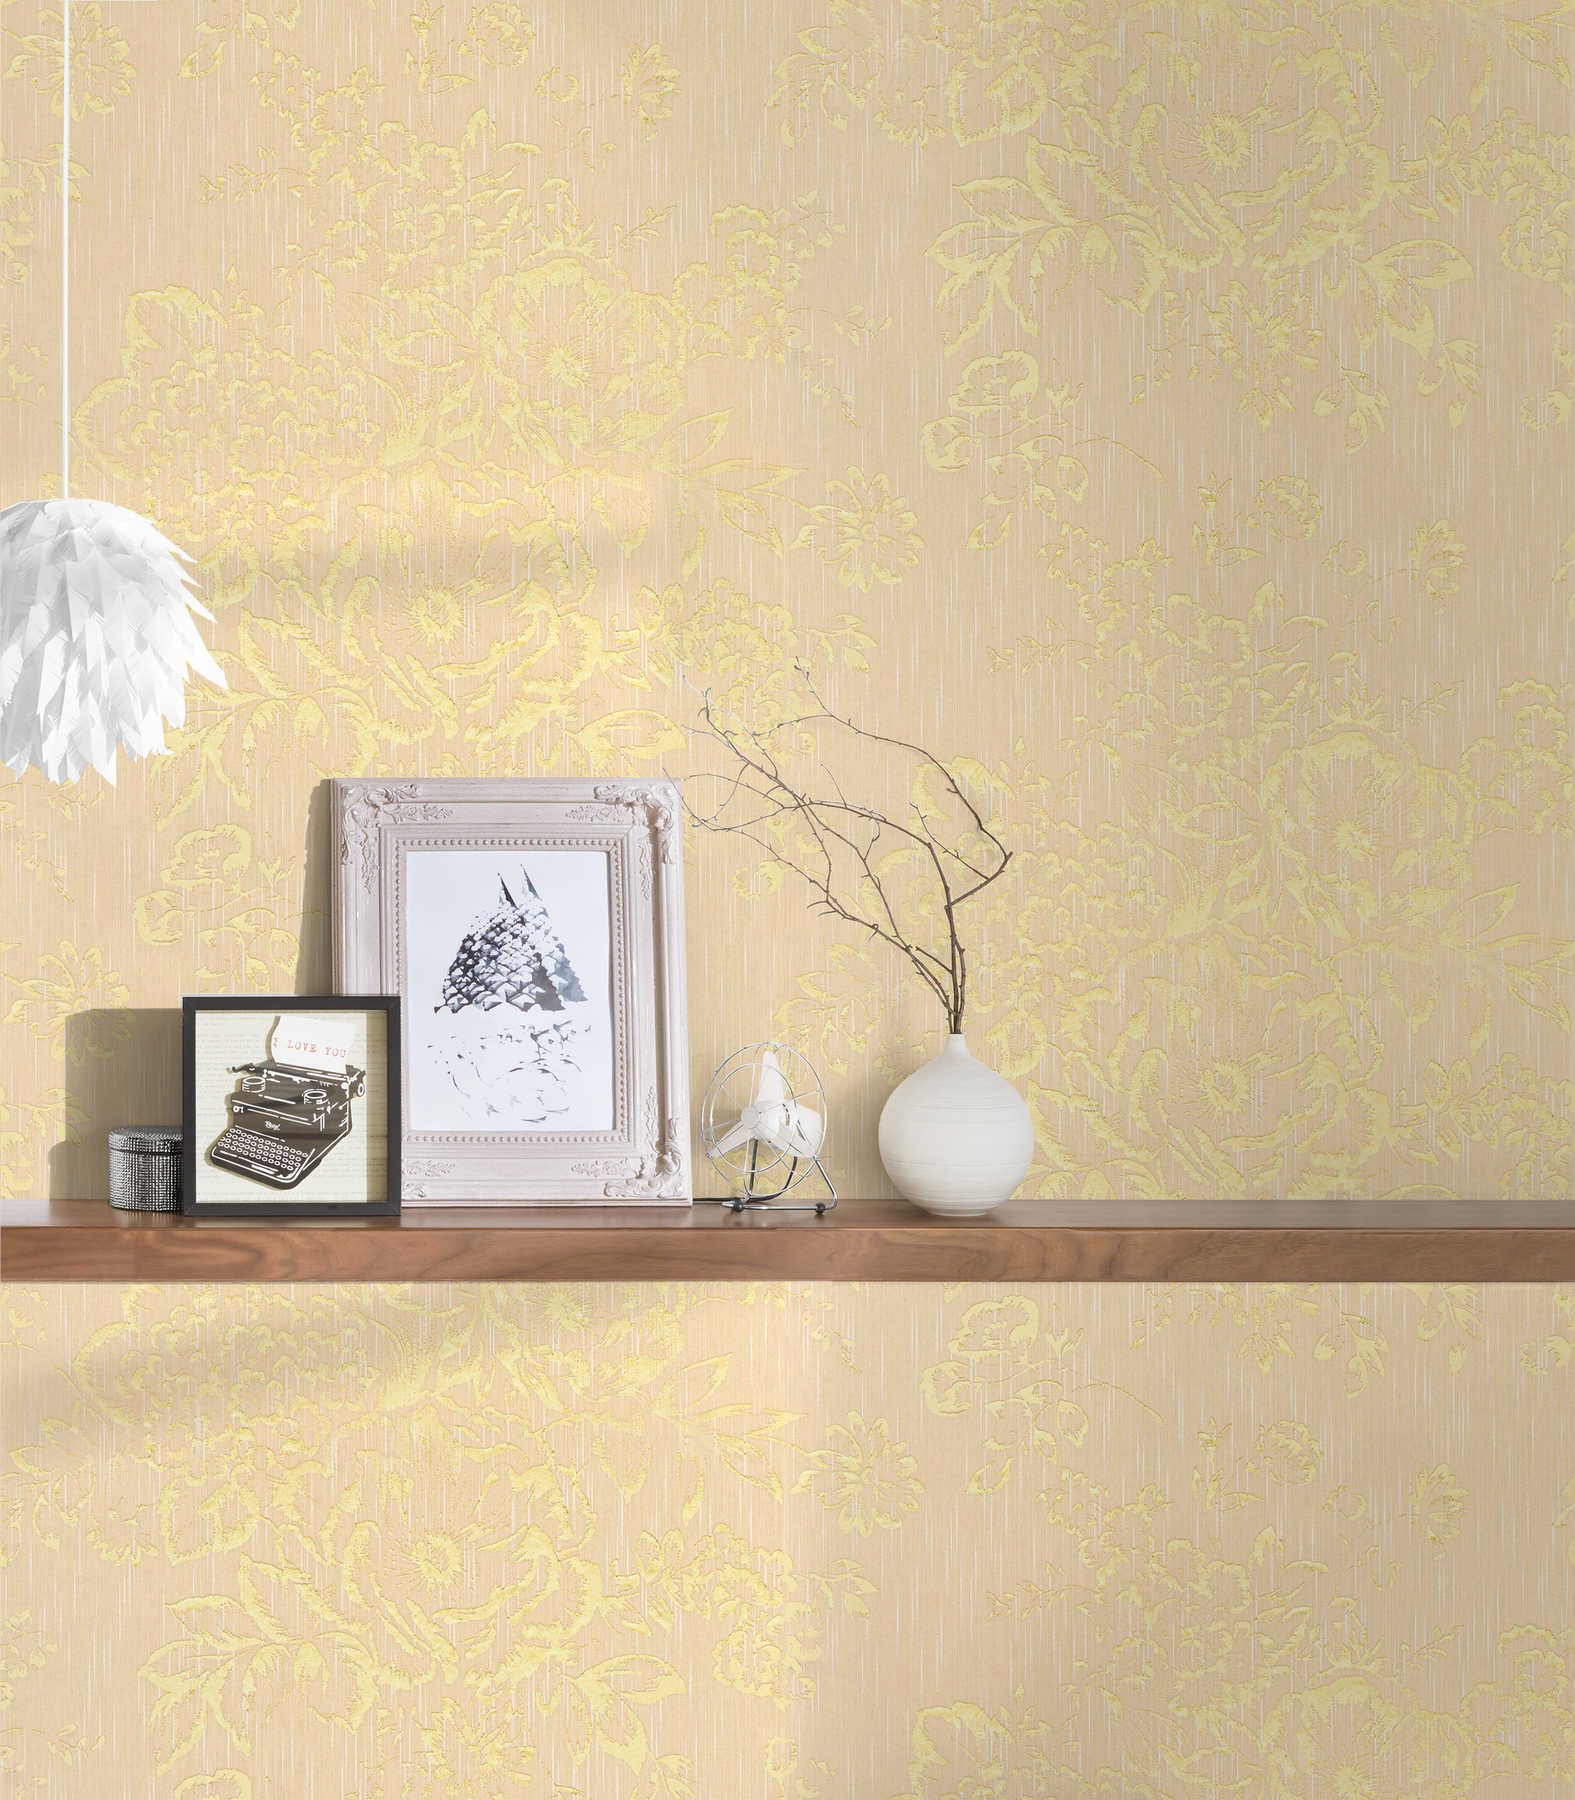             Papier peint structuré avec motif floral doré - or, crème
        